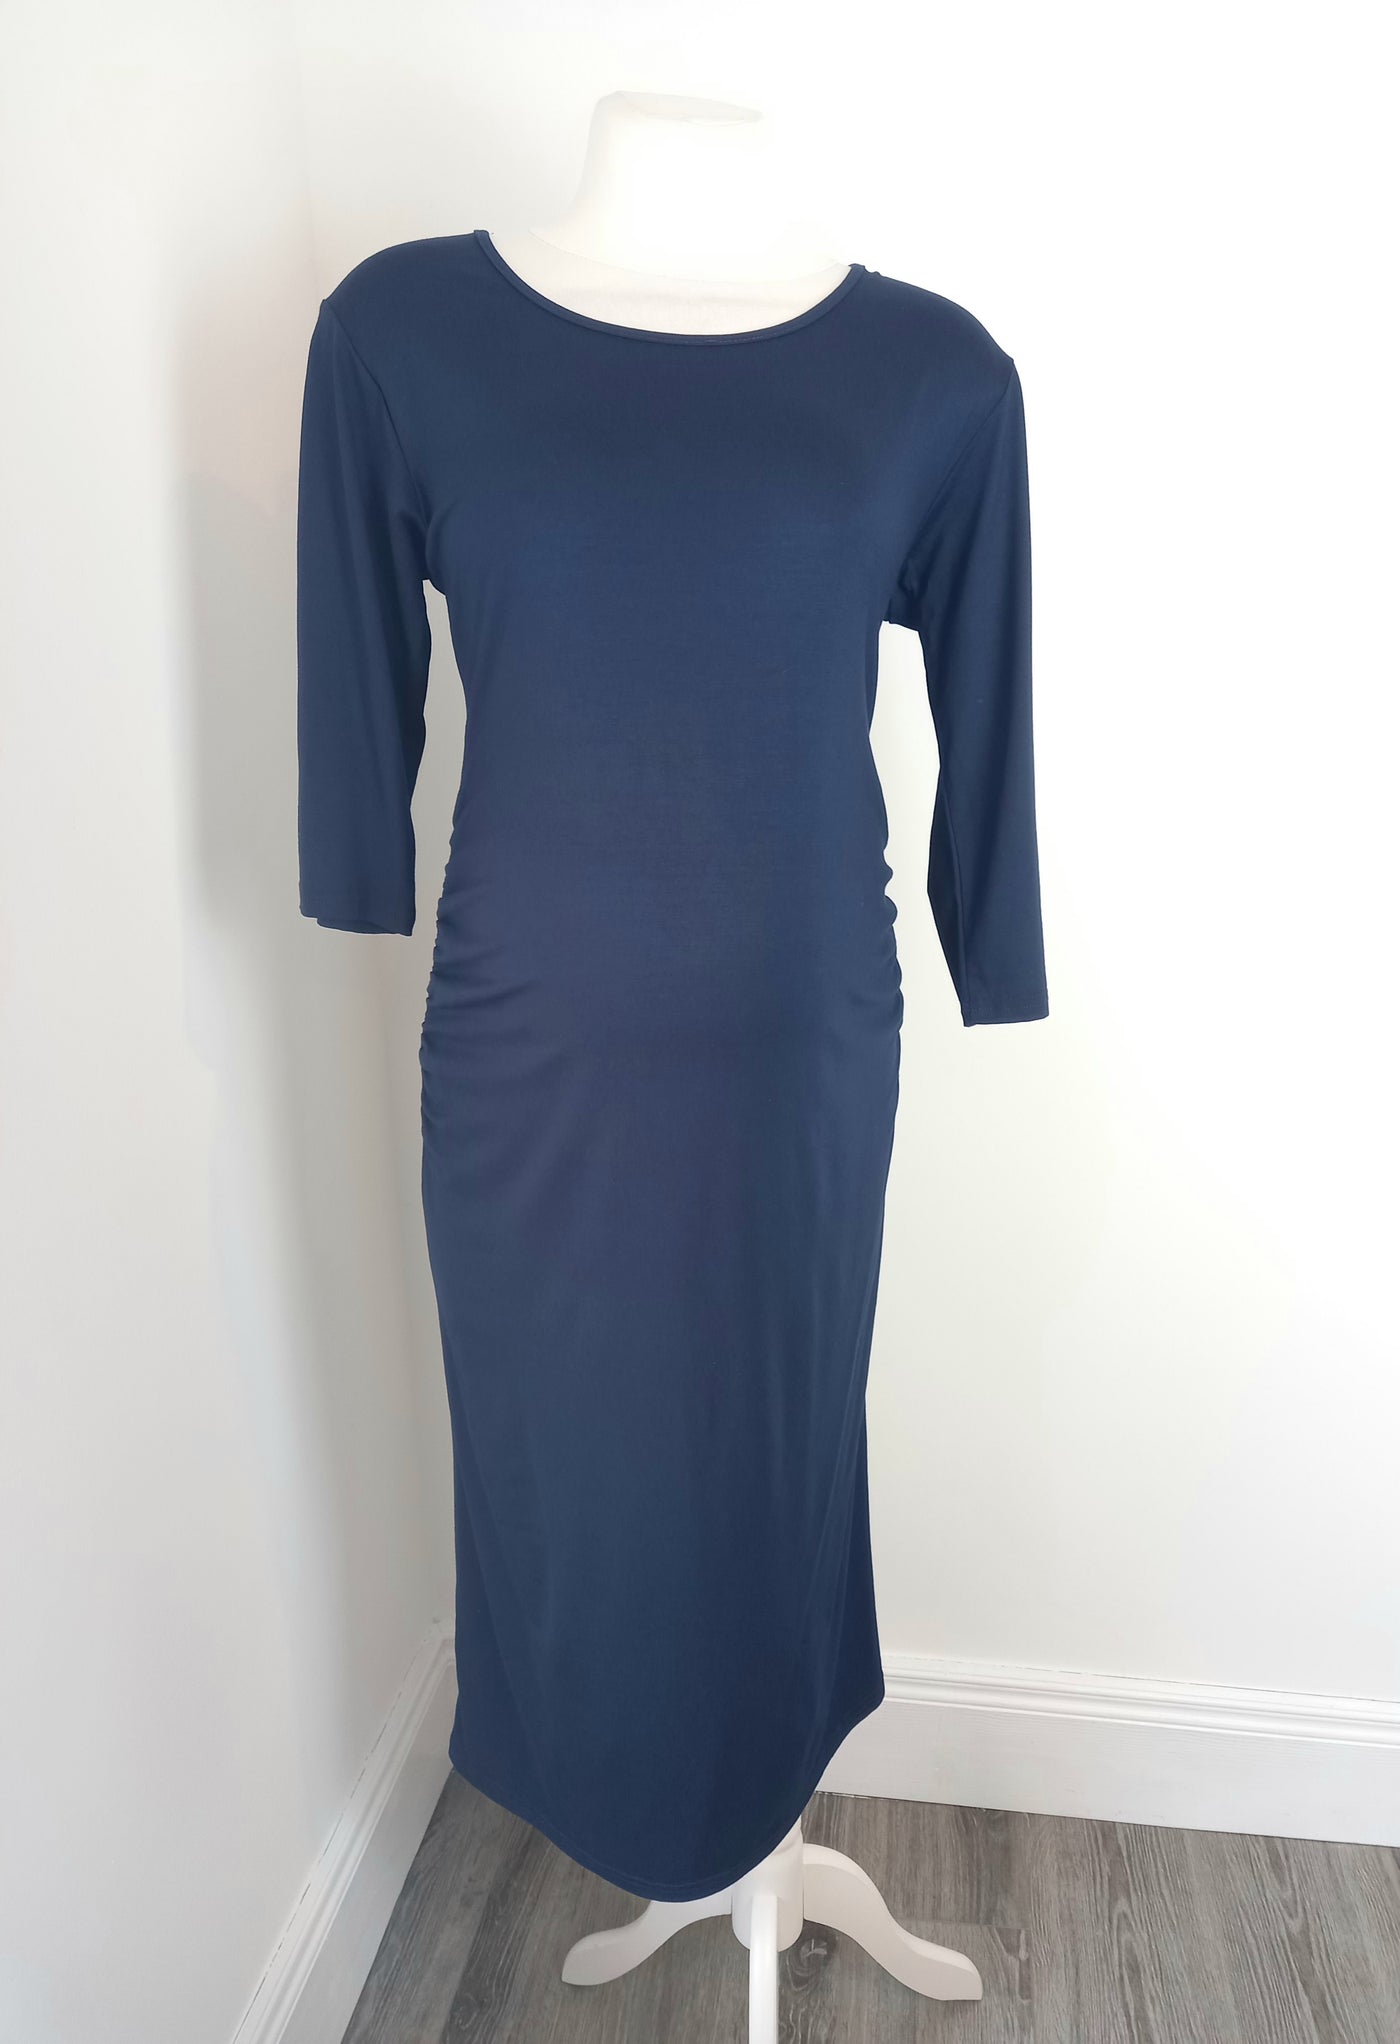 Happy Mama navy 3/4 sleeve stretch dress (BNWT) - Size XL (Approx UK 14/16)